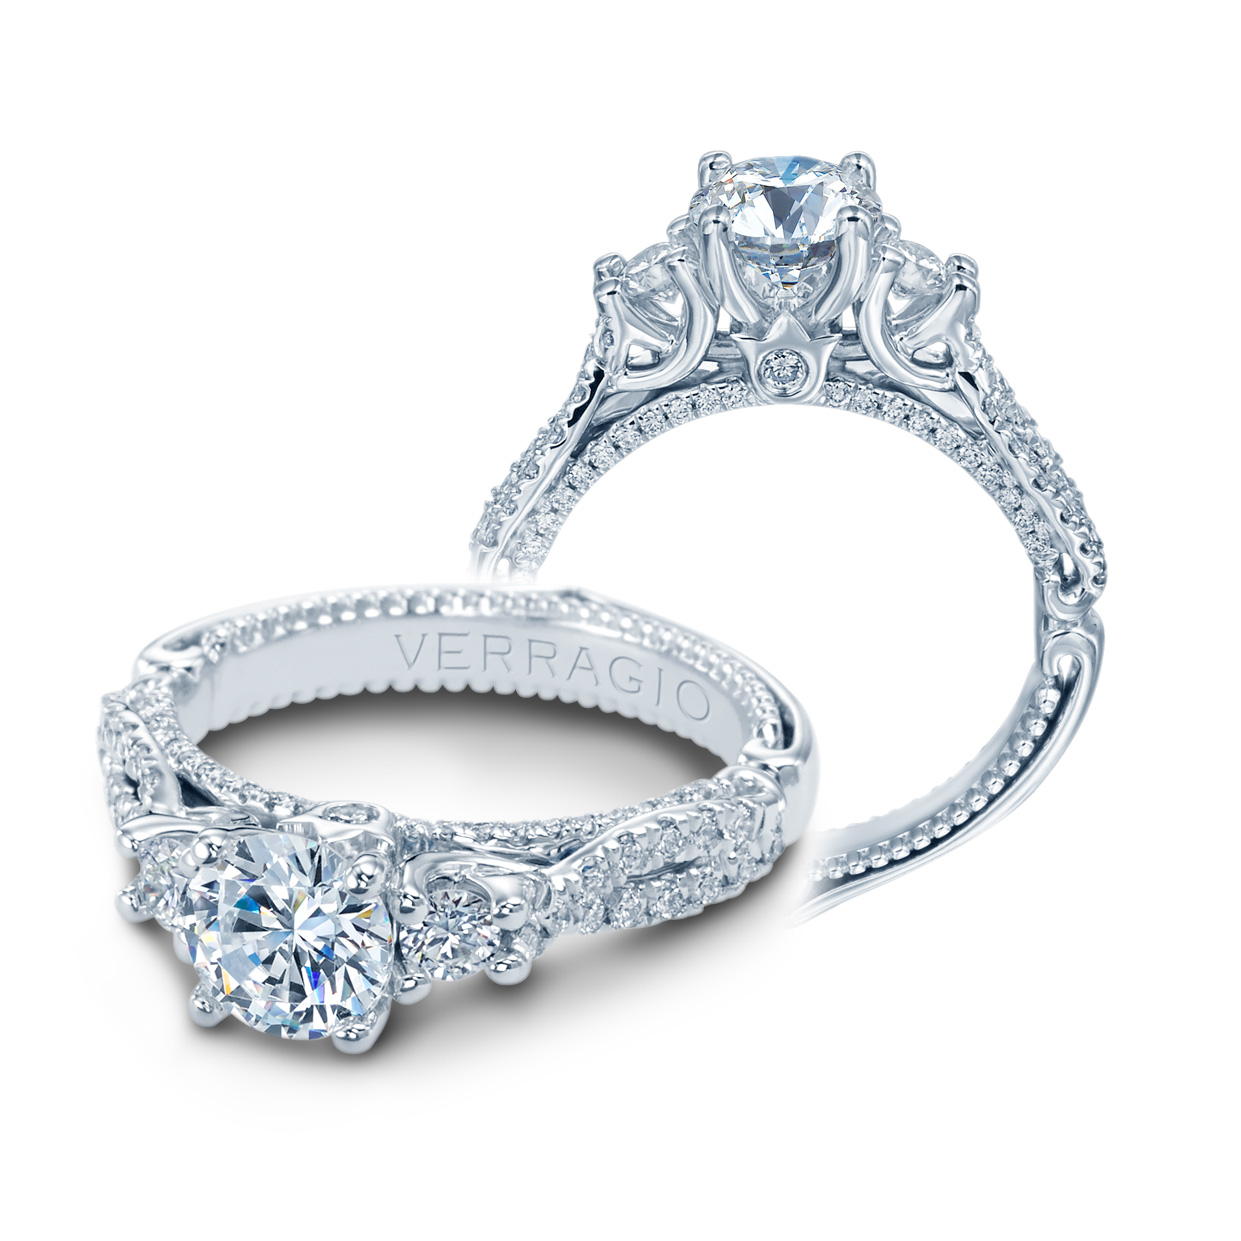 Verragio Couture-0475R 18 Karat Engagement Ring